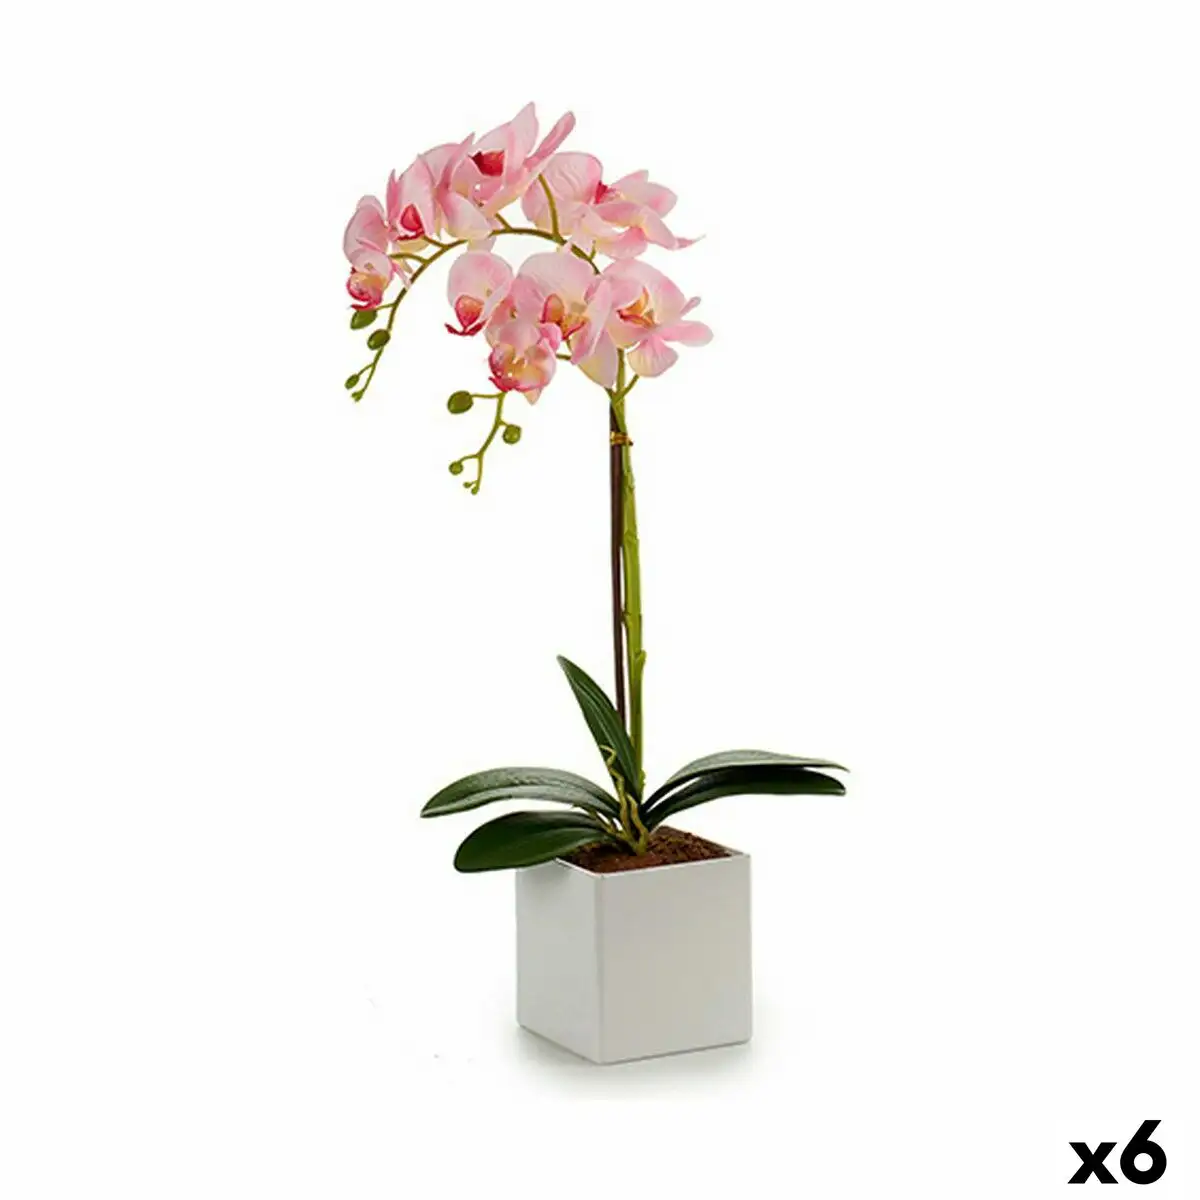 Plante decorative orchidee 18 x 47 x 14 cm plastique 6 unites _2972. DIAYTAR SENEGAL - Où Choisir Rime avec Qualité. Découvrez notre sélection soigneusement conçue et choisissez des articles qui incarnent l'excellence et l'innovation.